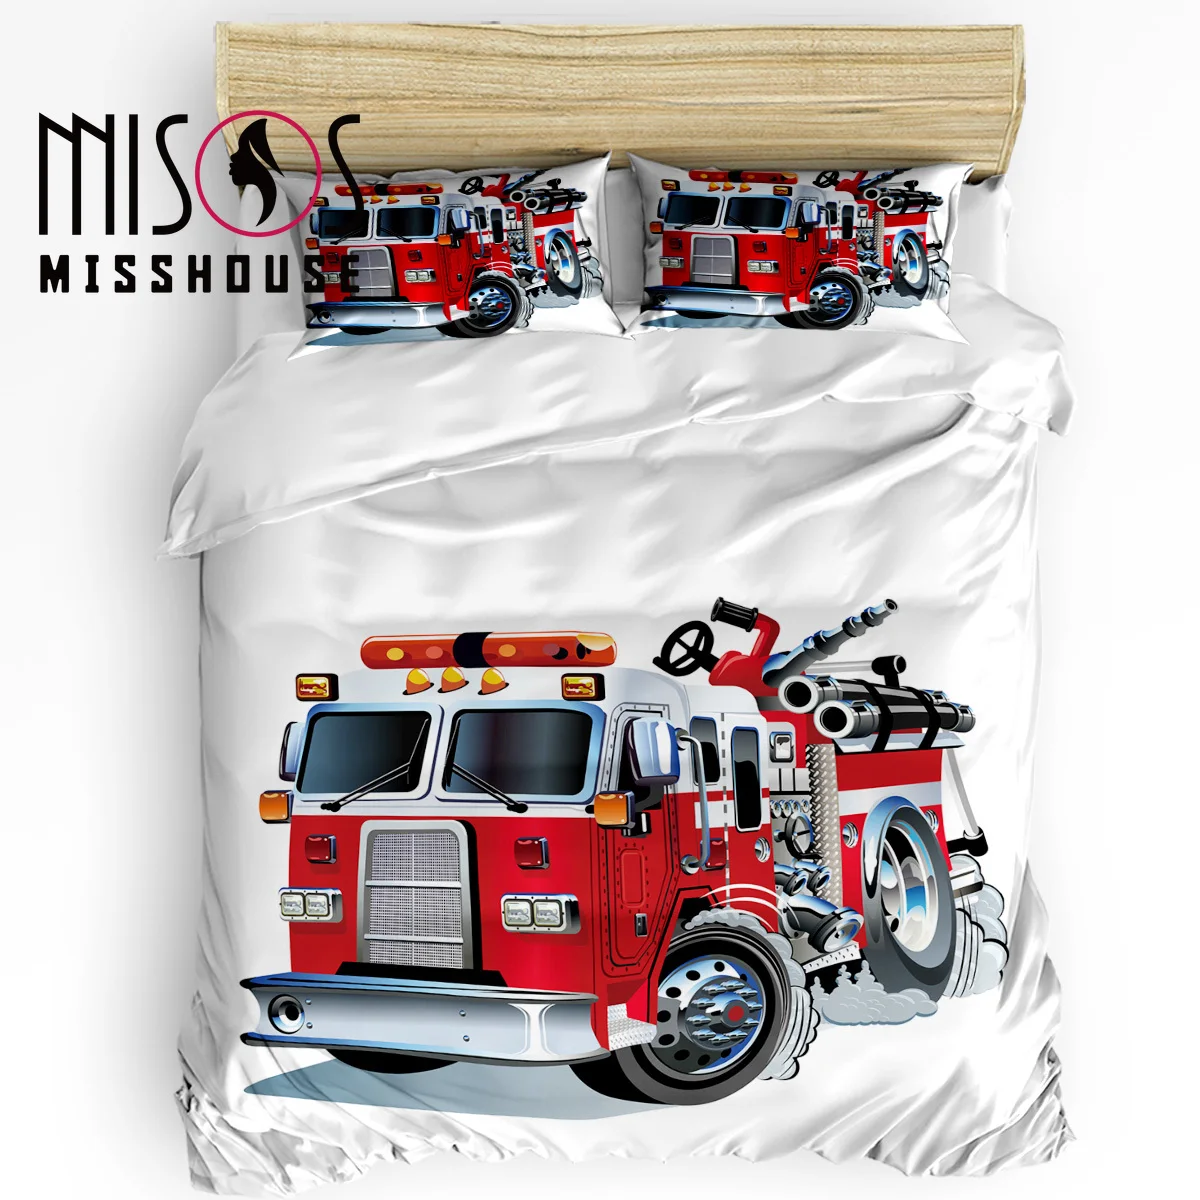 Misshouse постельные принадлежности наборы мультфильм пожарная машина домашний текстиль 3 шт. пододеяльник набор одеяло наволочки